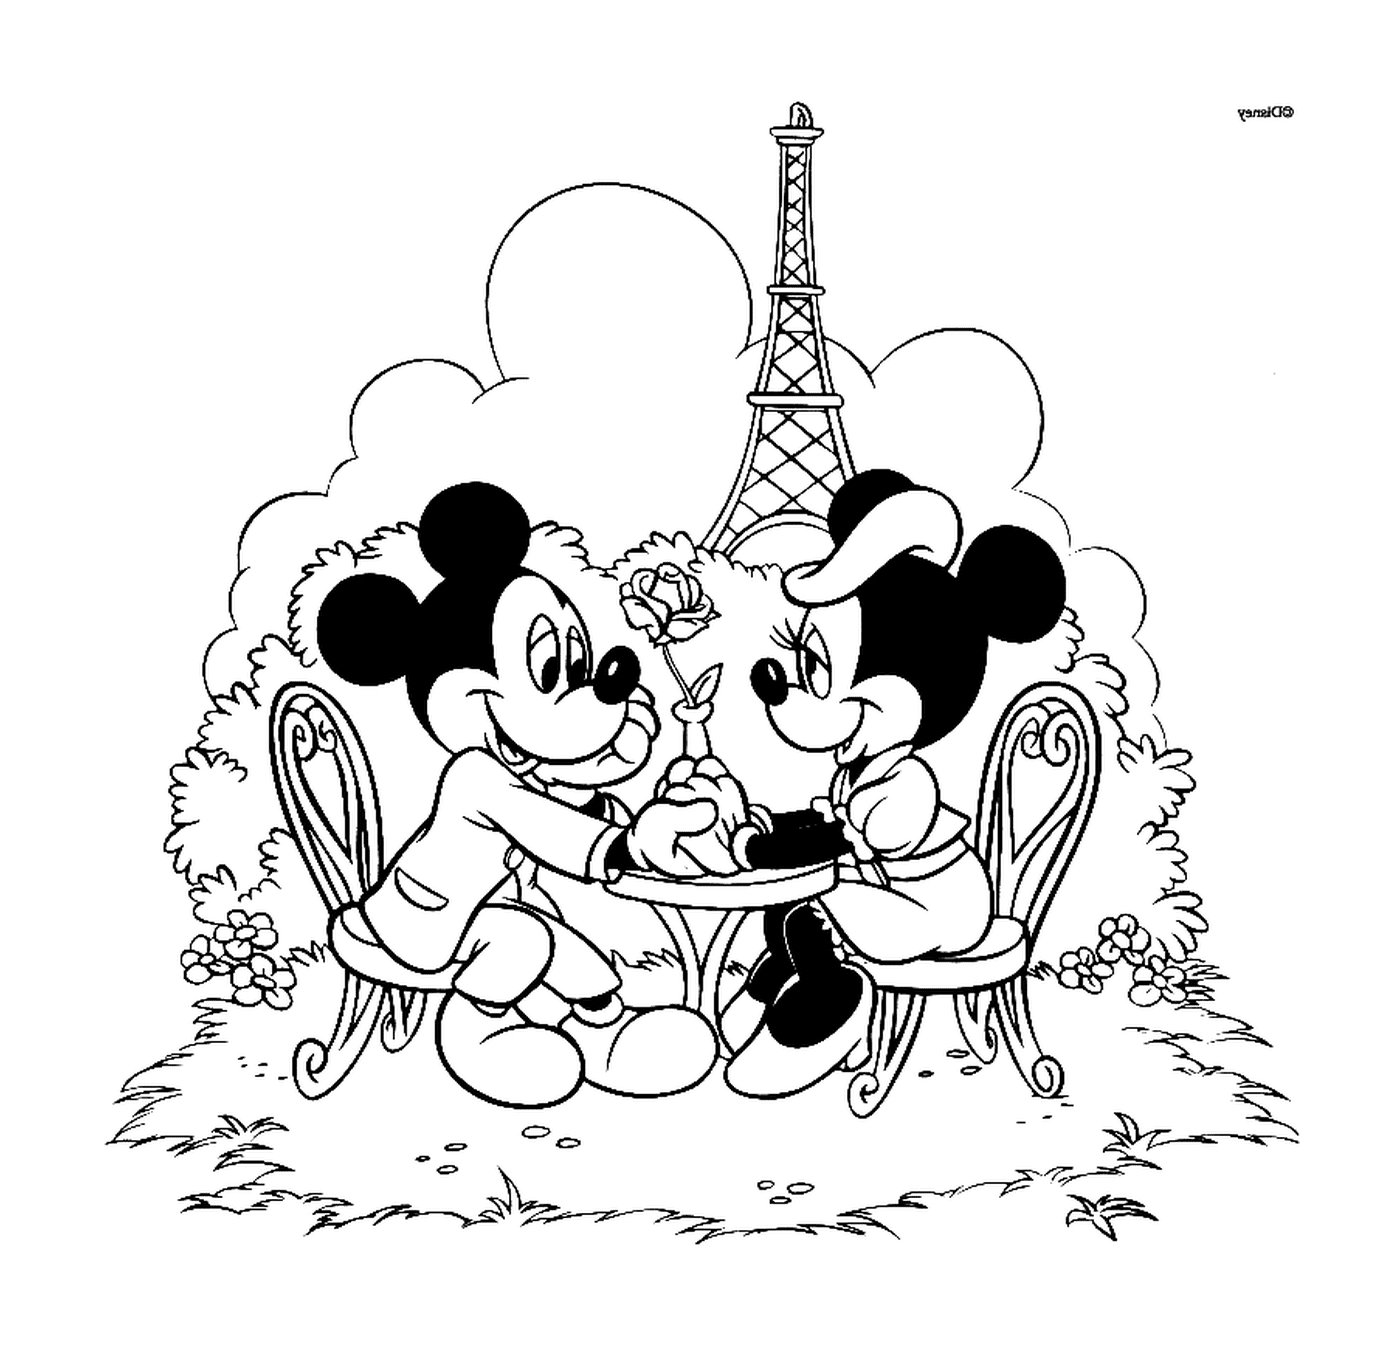  Mickey和Minnie在巴黎相爱 